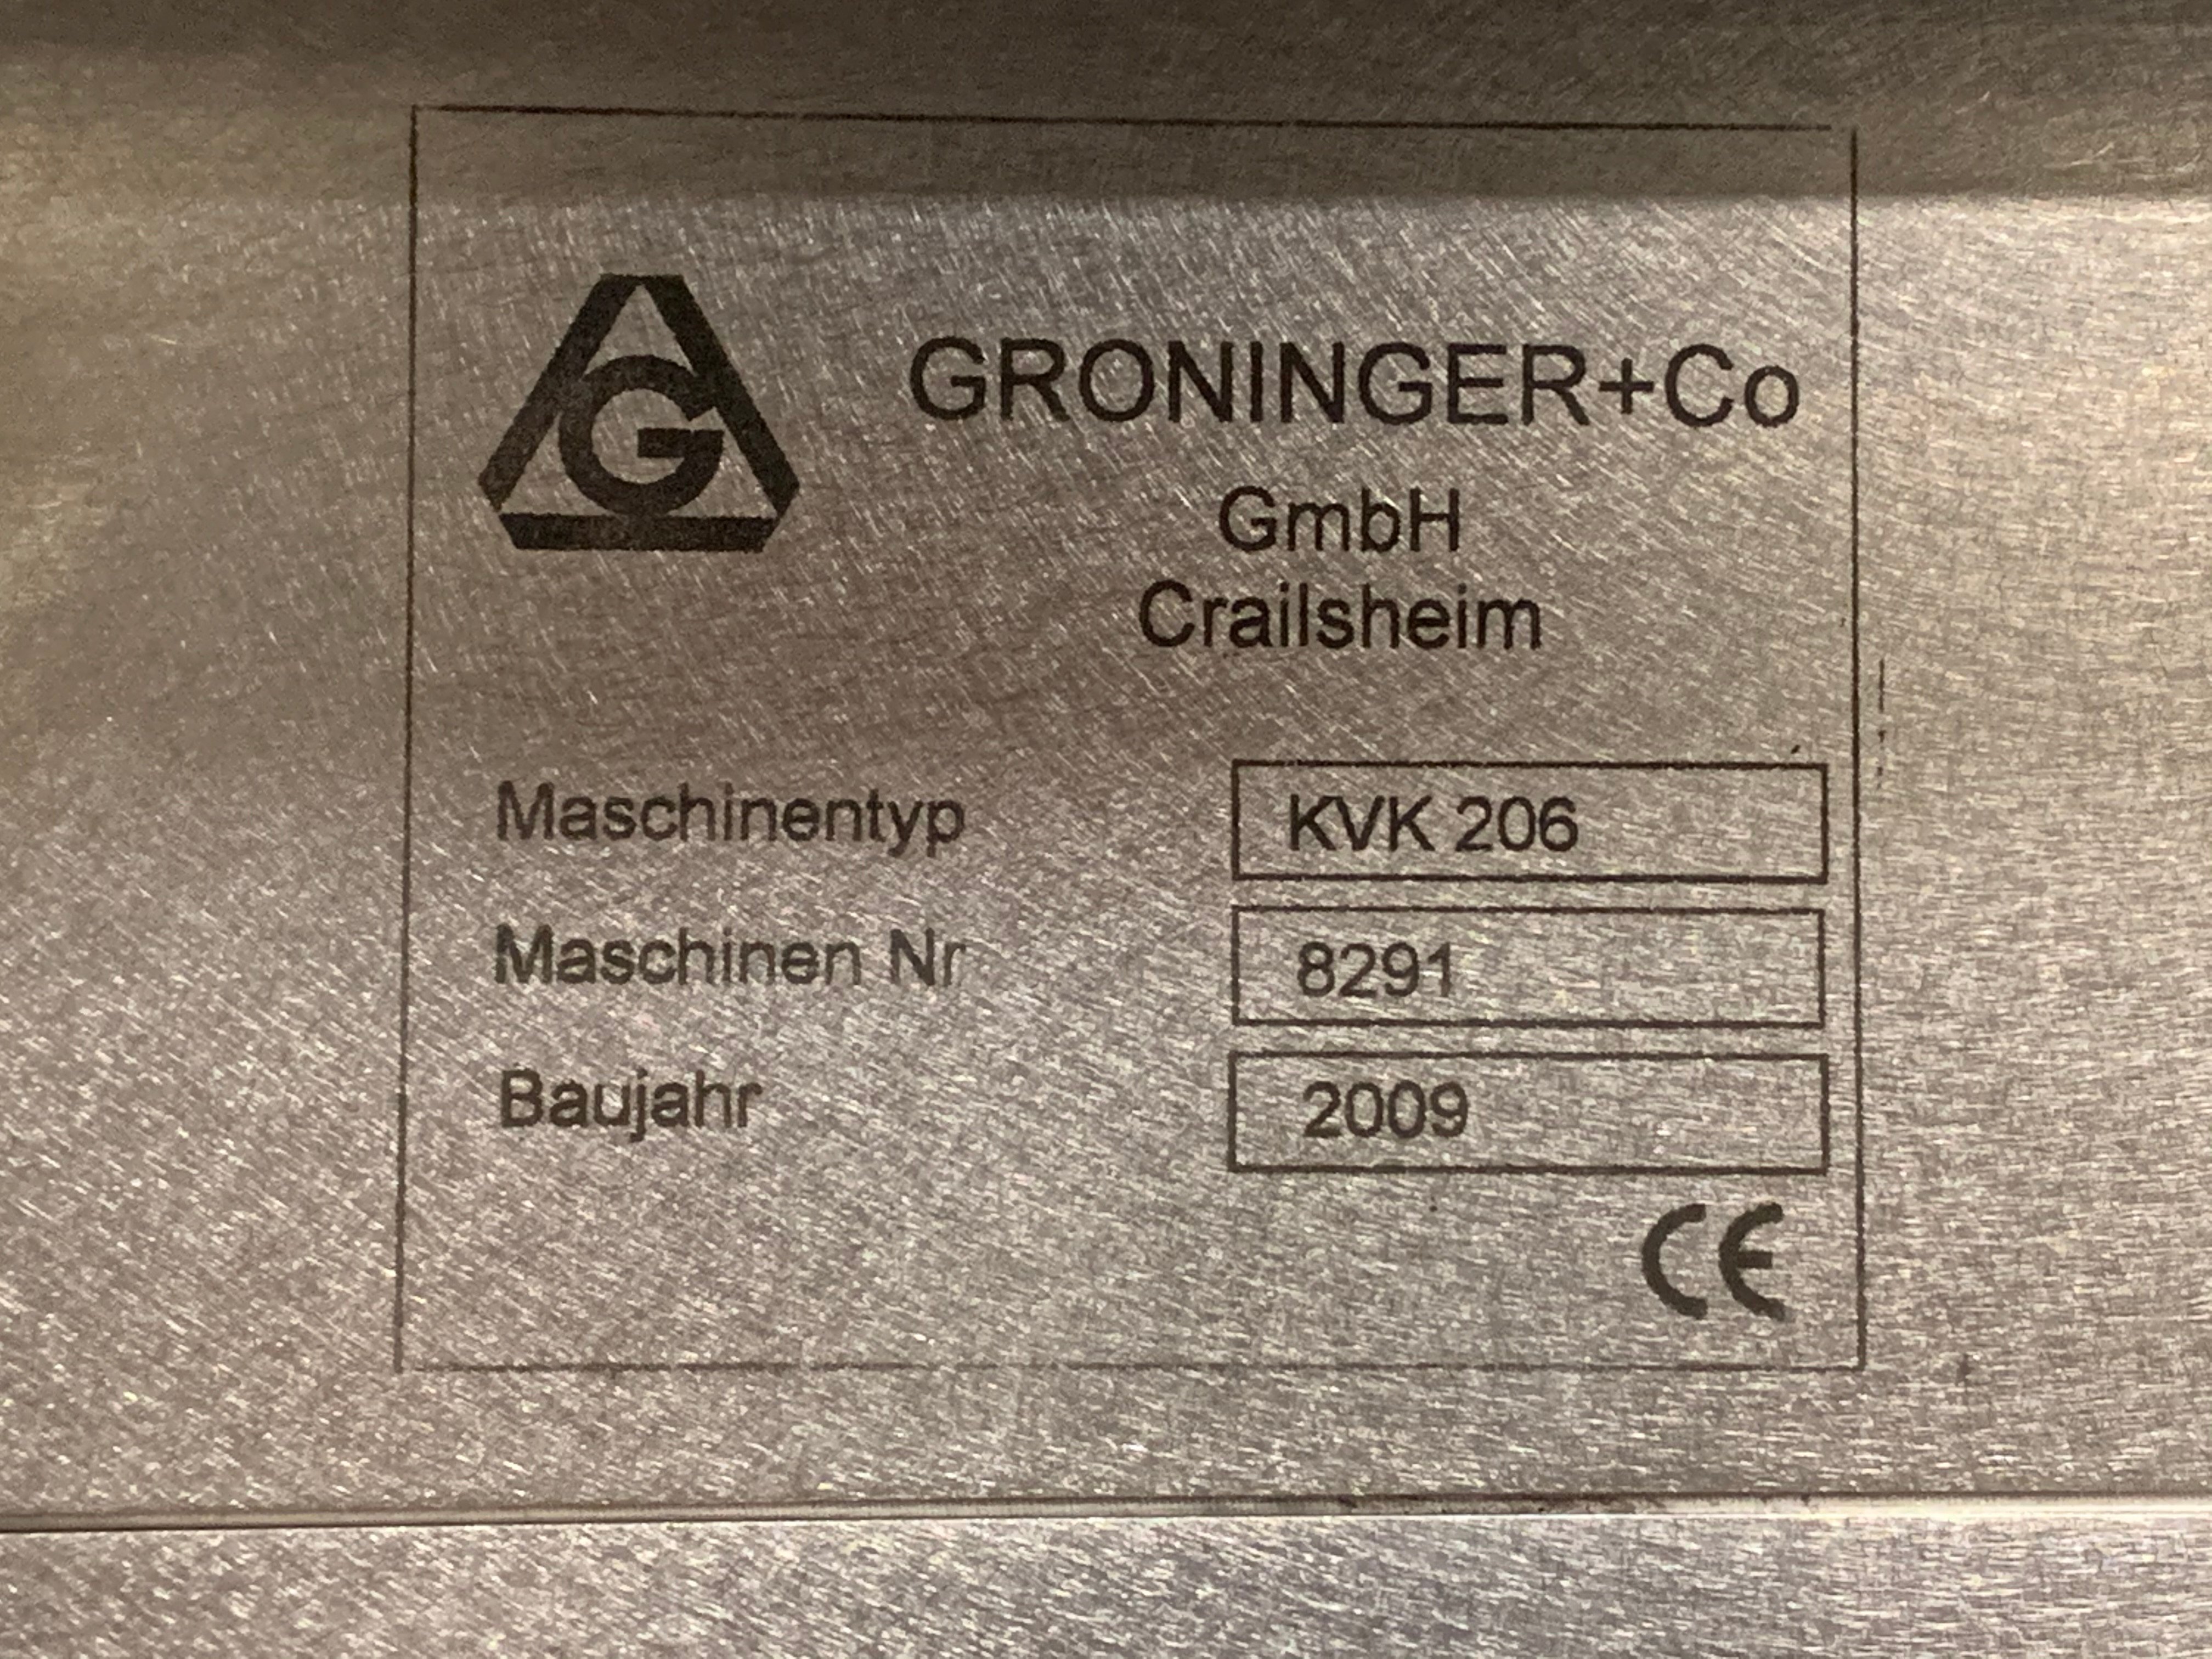 Groninger Inserter/Torquer, Model KVK 206